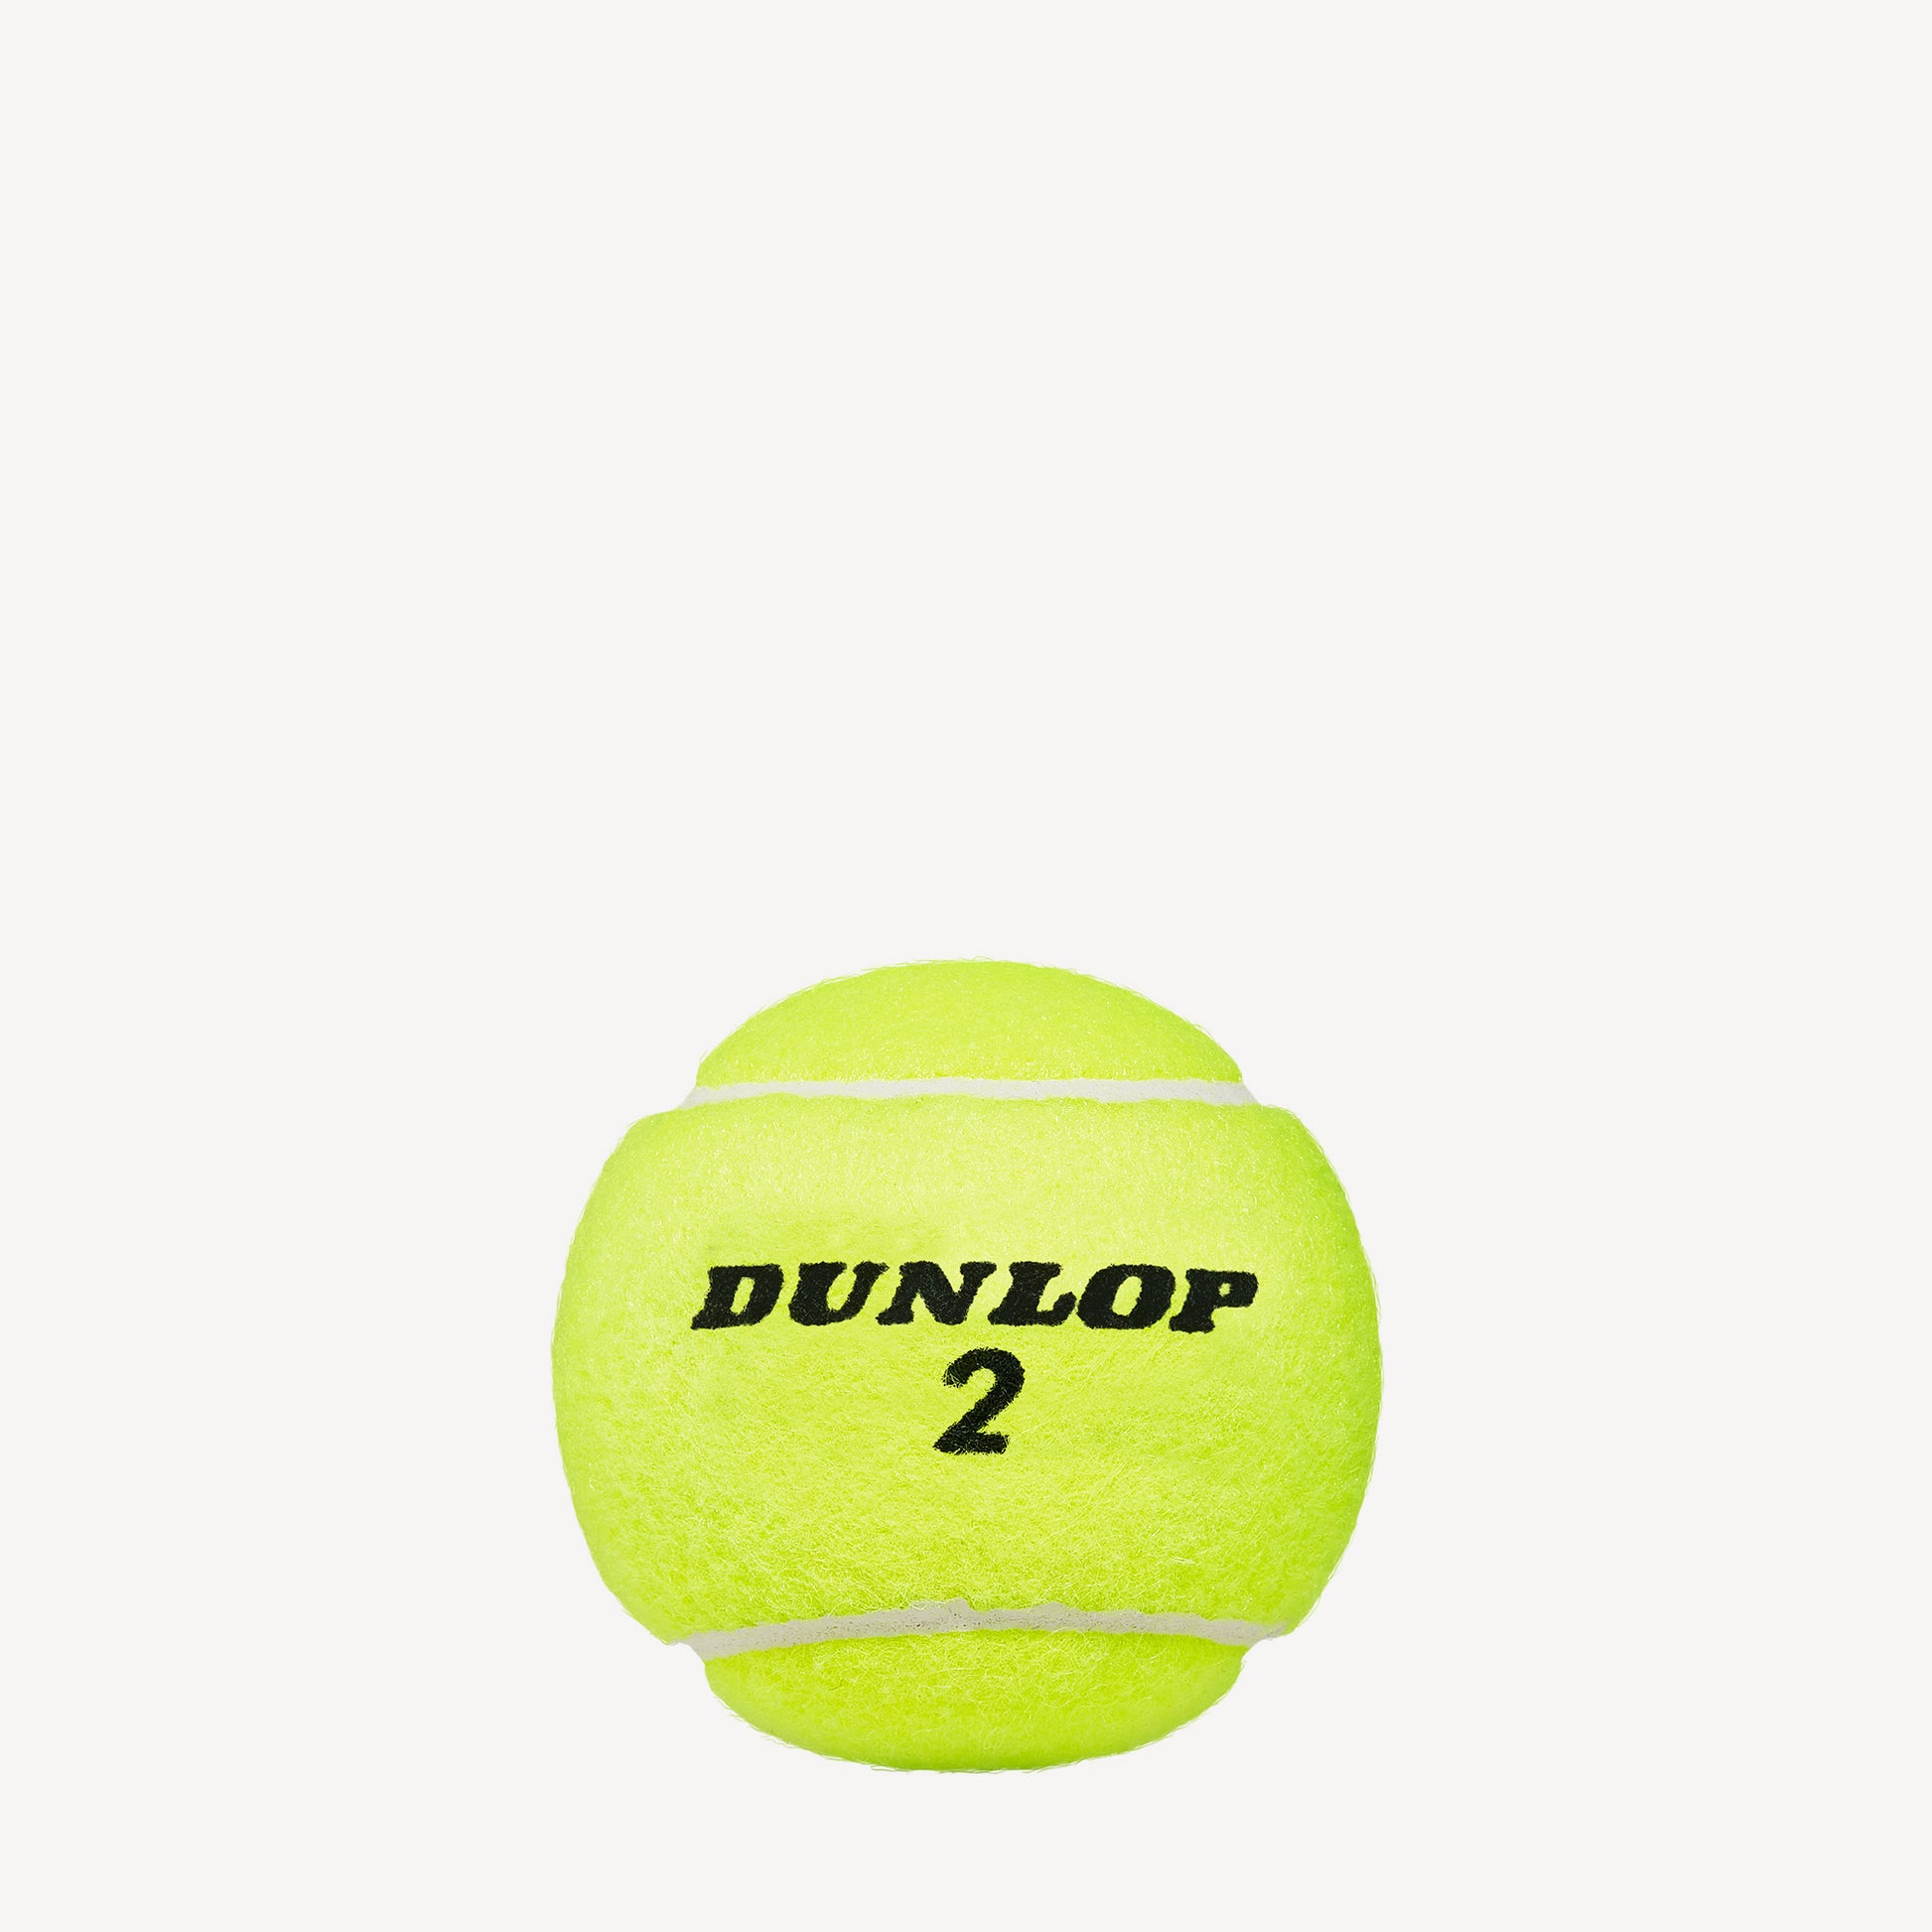 Dunlop Australian Open 4 Tennis Balls Bipack 2